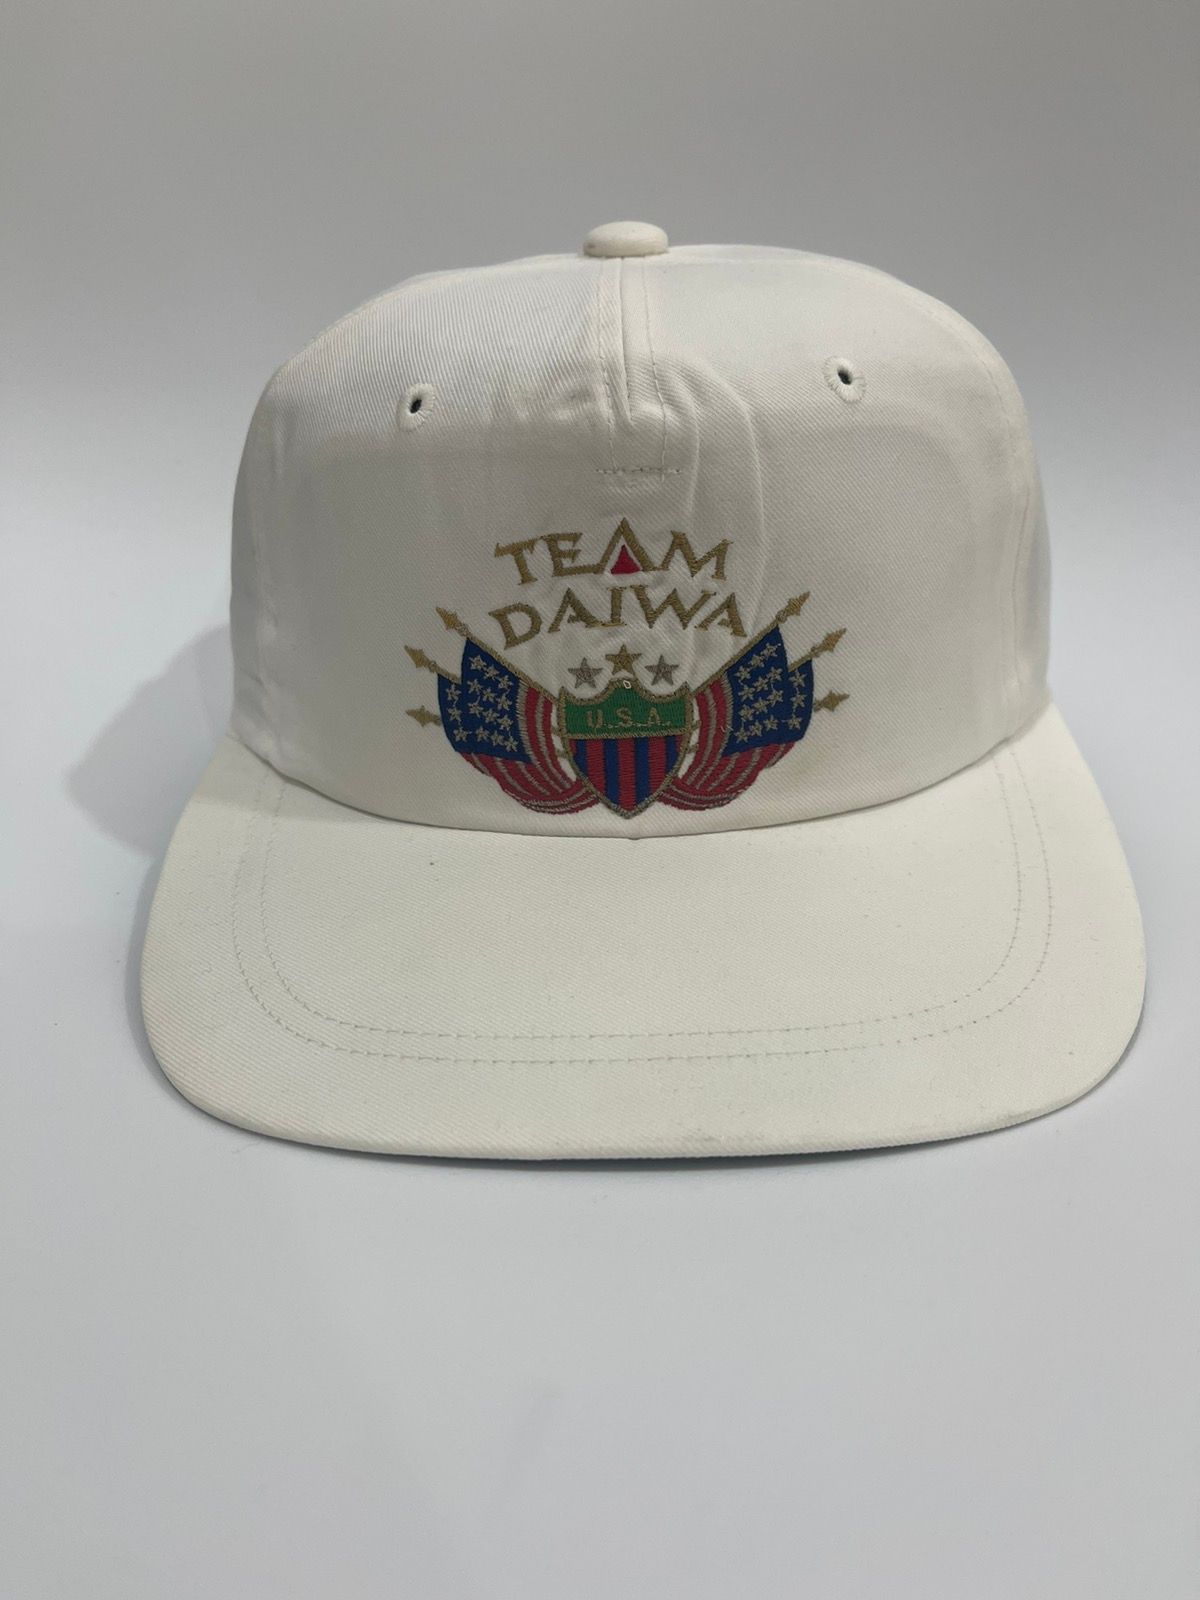 Vintage Rare team daiwa hat